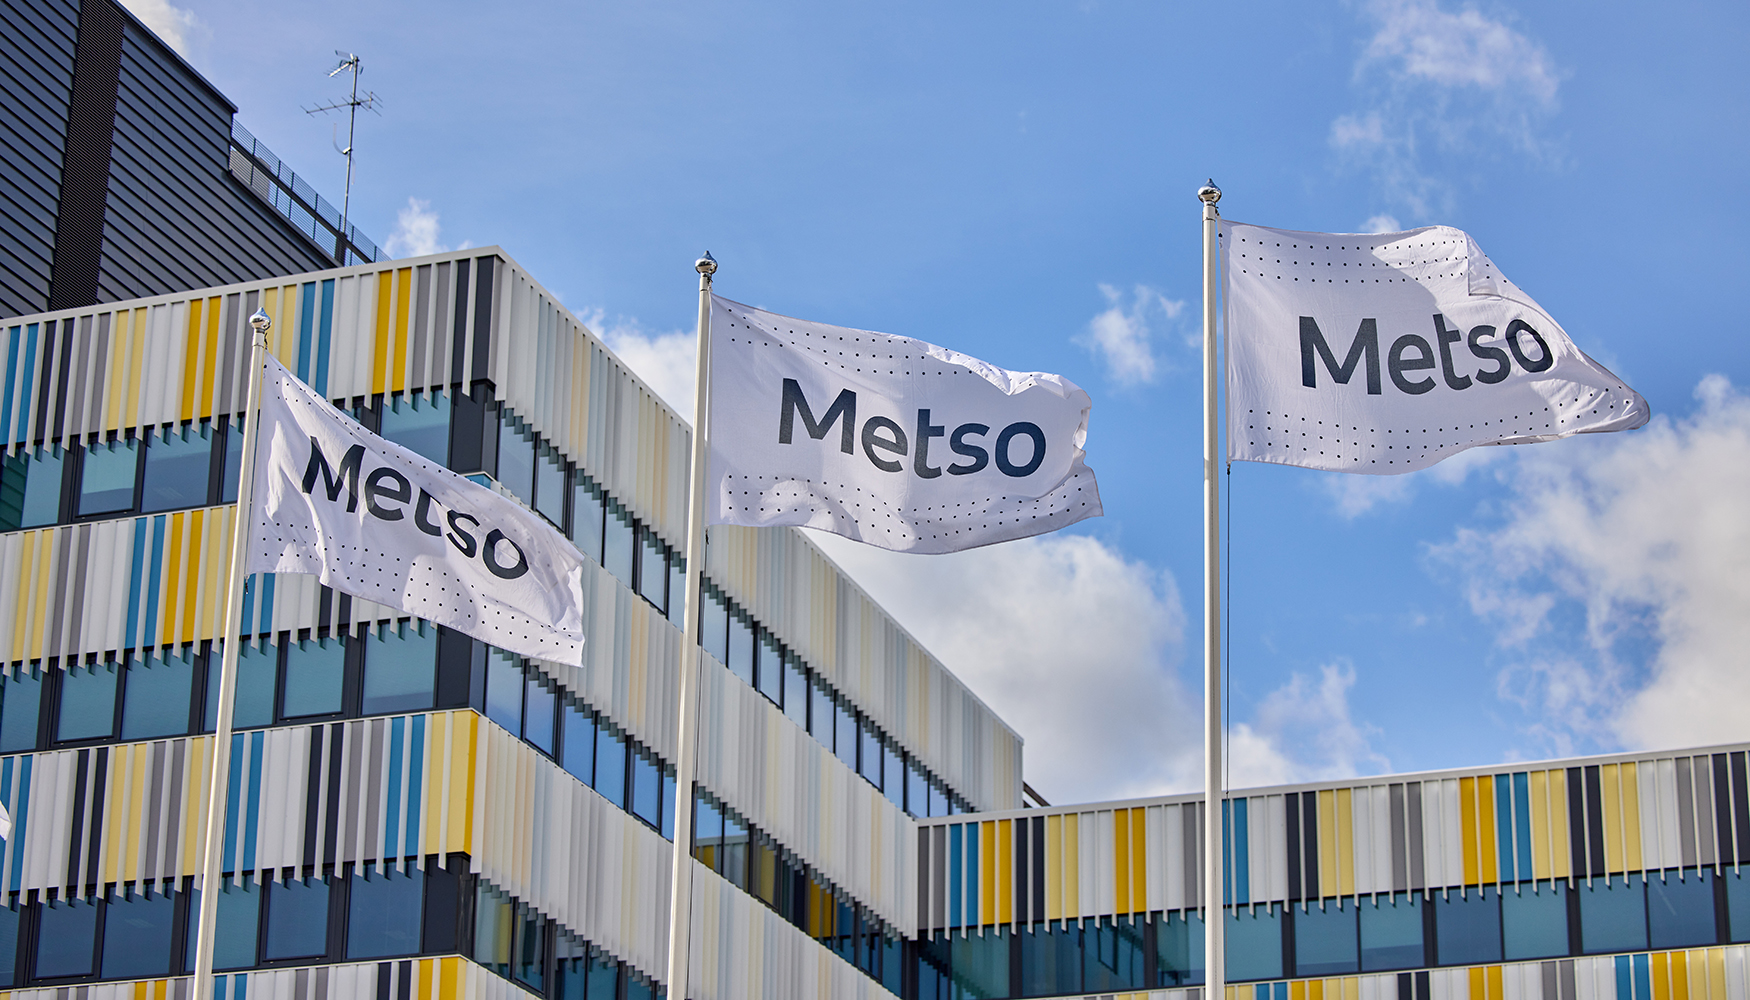 Desde el 4 de mayo, Metso Outotec opera con la marca unificada Metso